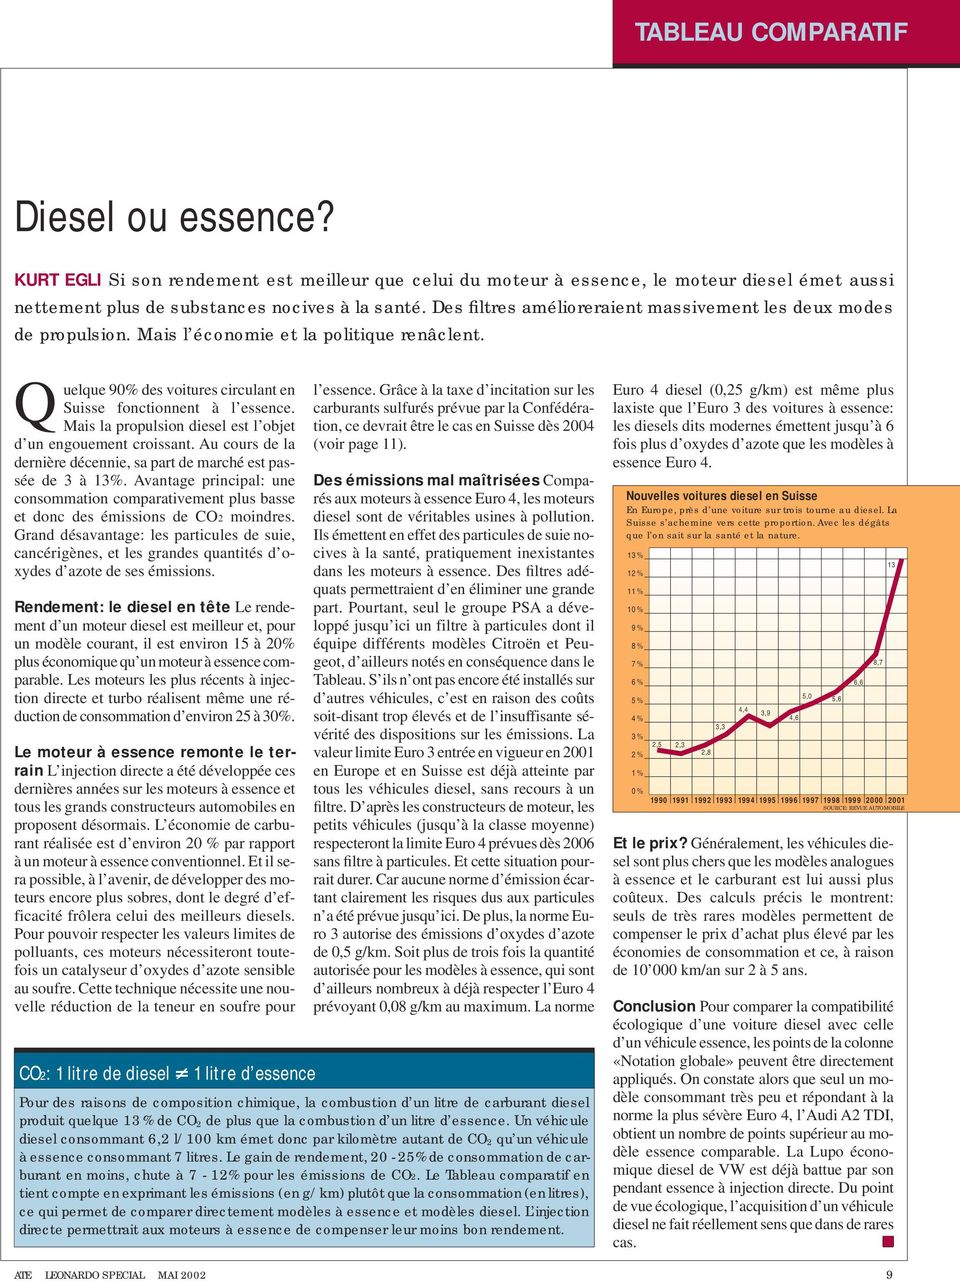 Mais la propulsion diesel est l objet d un engouement croissant. Au cours de la dernière décennie, sa part de marché est passée de 3 à 3%.